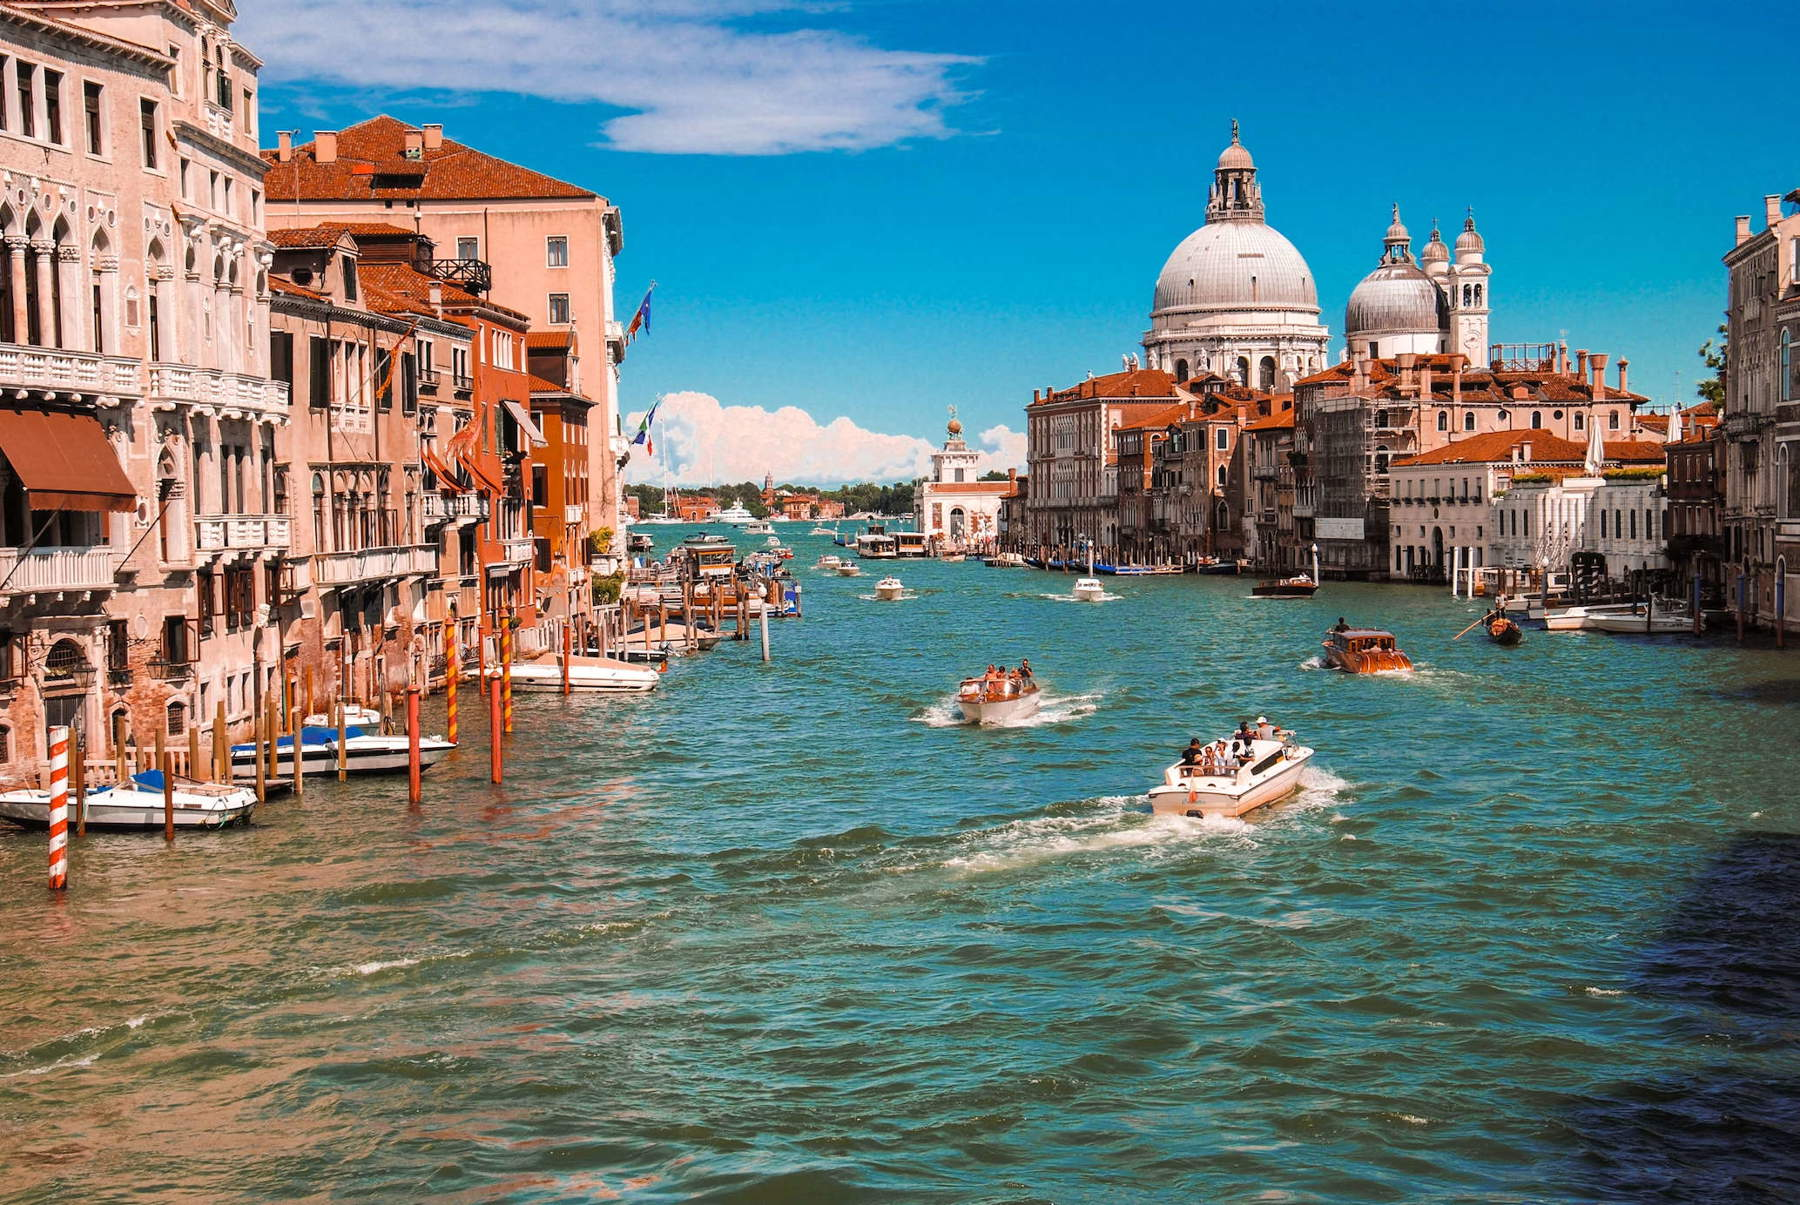 Venezia, via al ticket d'ingresso: ecco giorni in cui sarà in vigore, costo, esclusi ed esentati